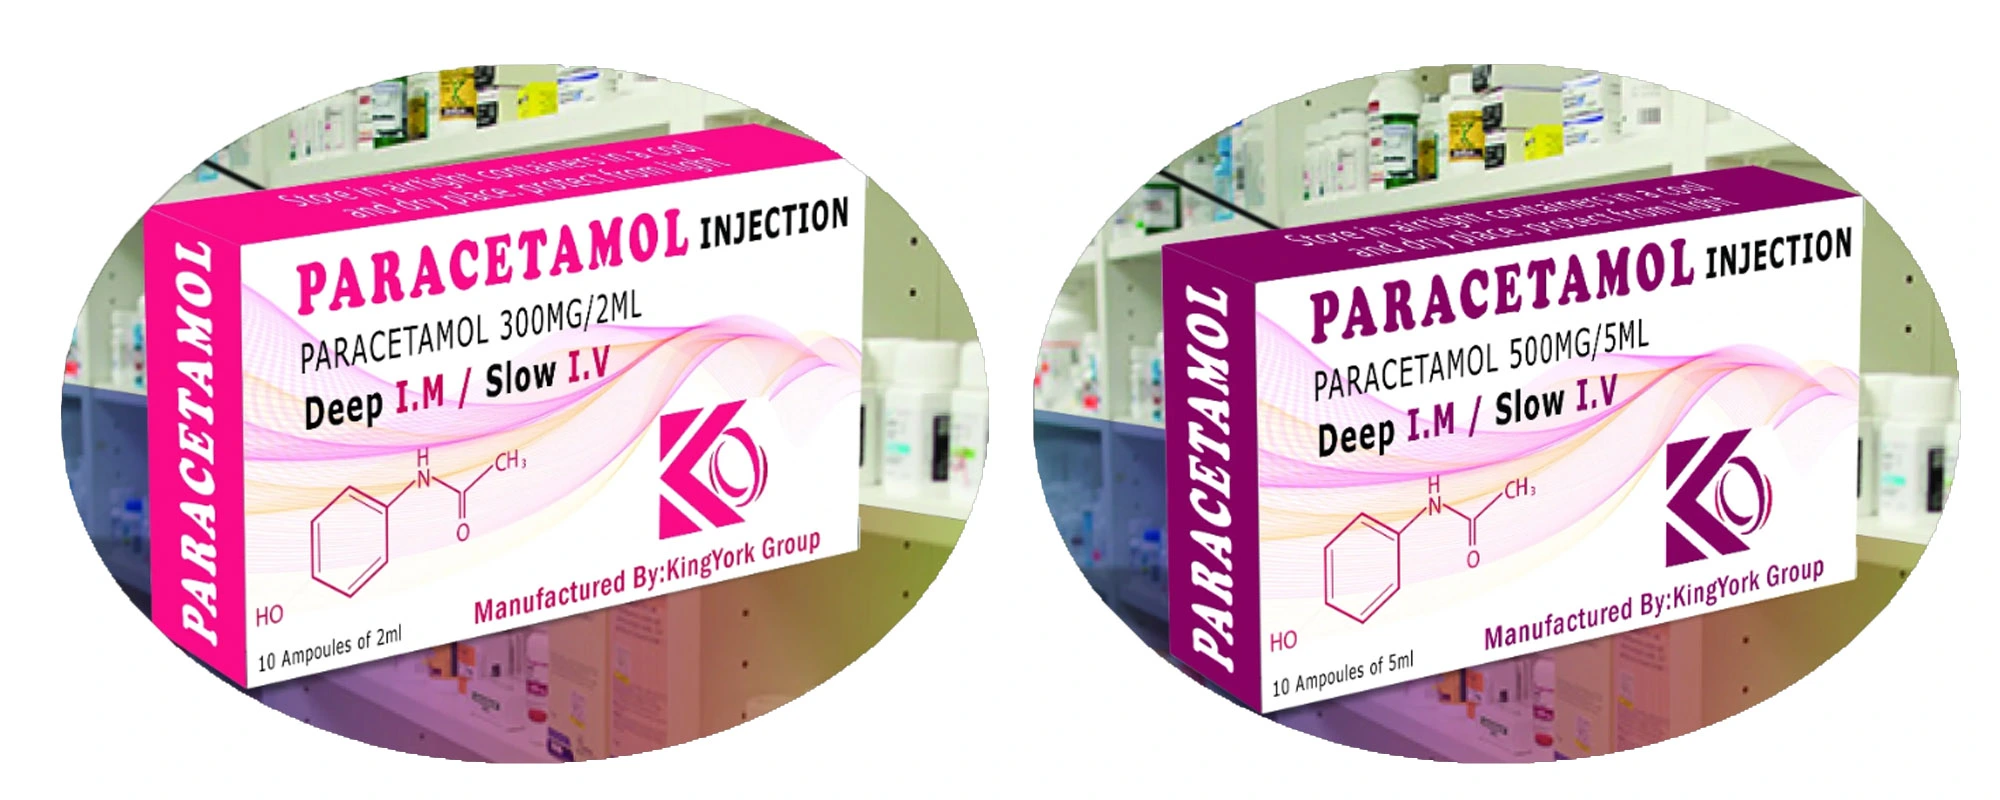 'Paracetamol injection 500mg', 'Paracetamol injection', 'Paracetamol'